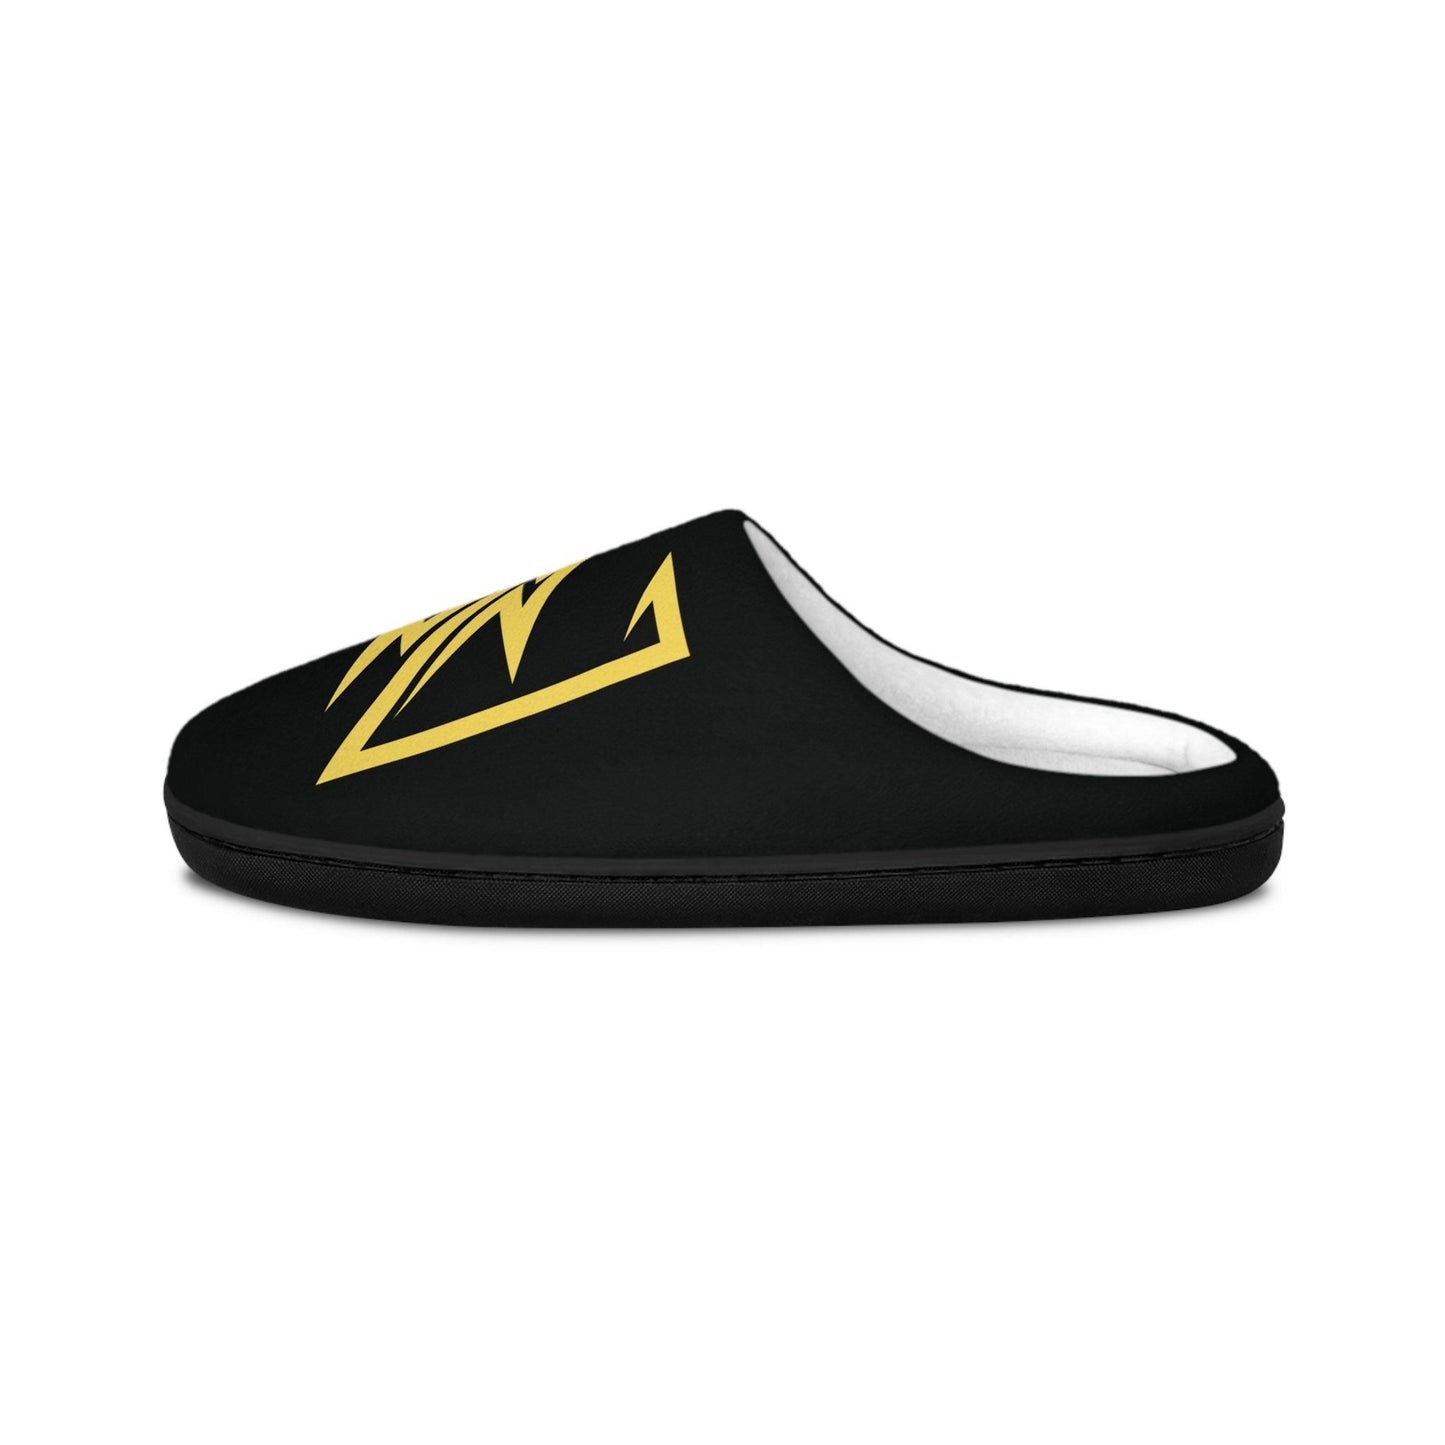 NX Vogue Logo Men's Indoor Slippers Shoes   